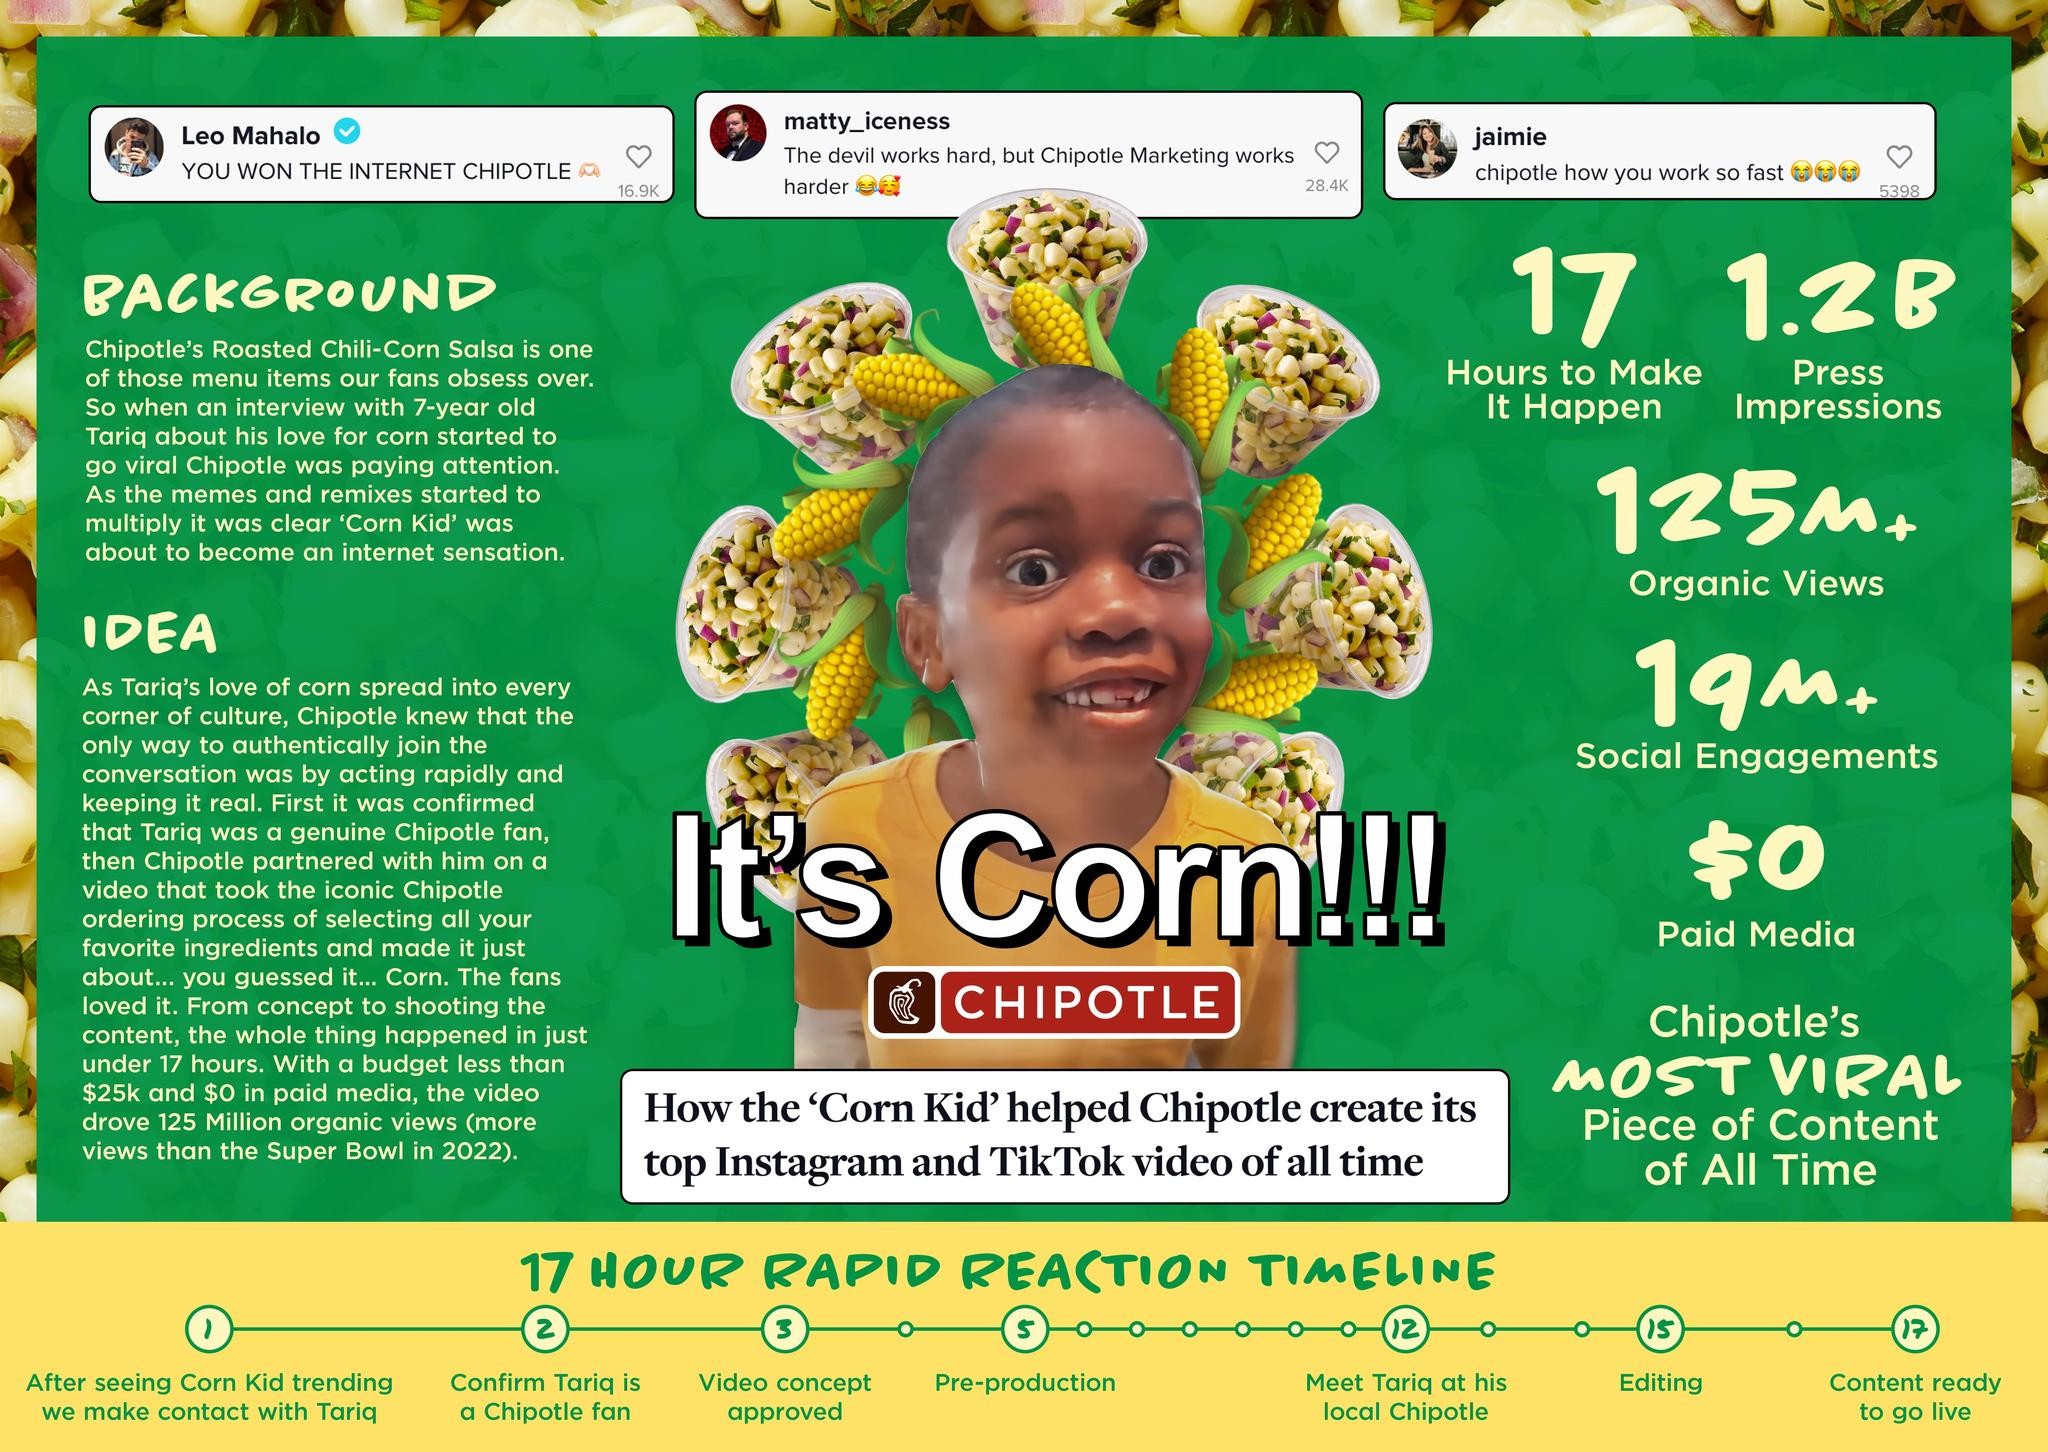 Chipotle - It's Corn